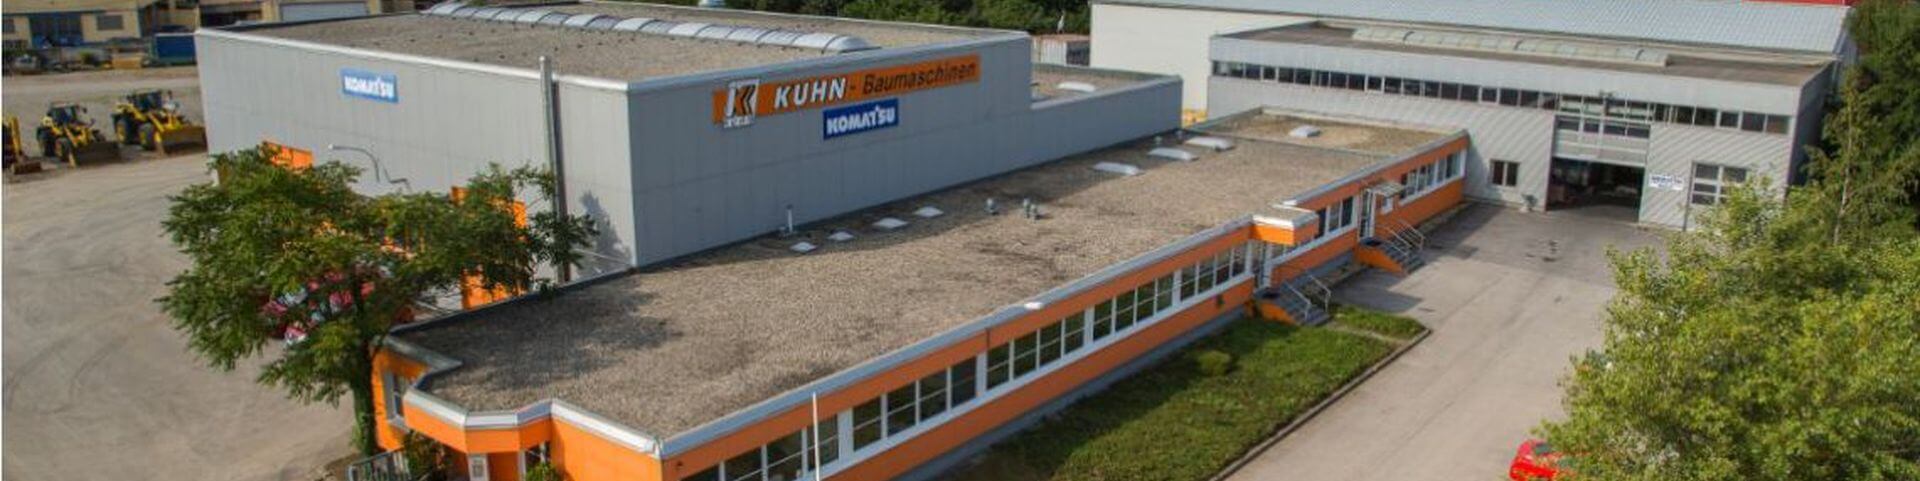 Titelbild von Lehrbetrieb KUHN Baumaschinen GmbH auf Lehrlingsportal.at